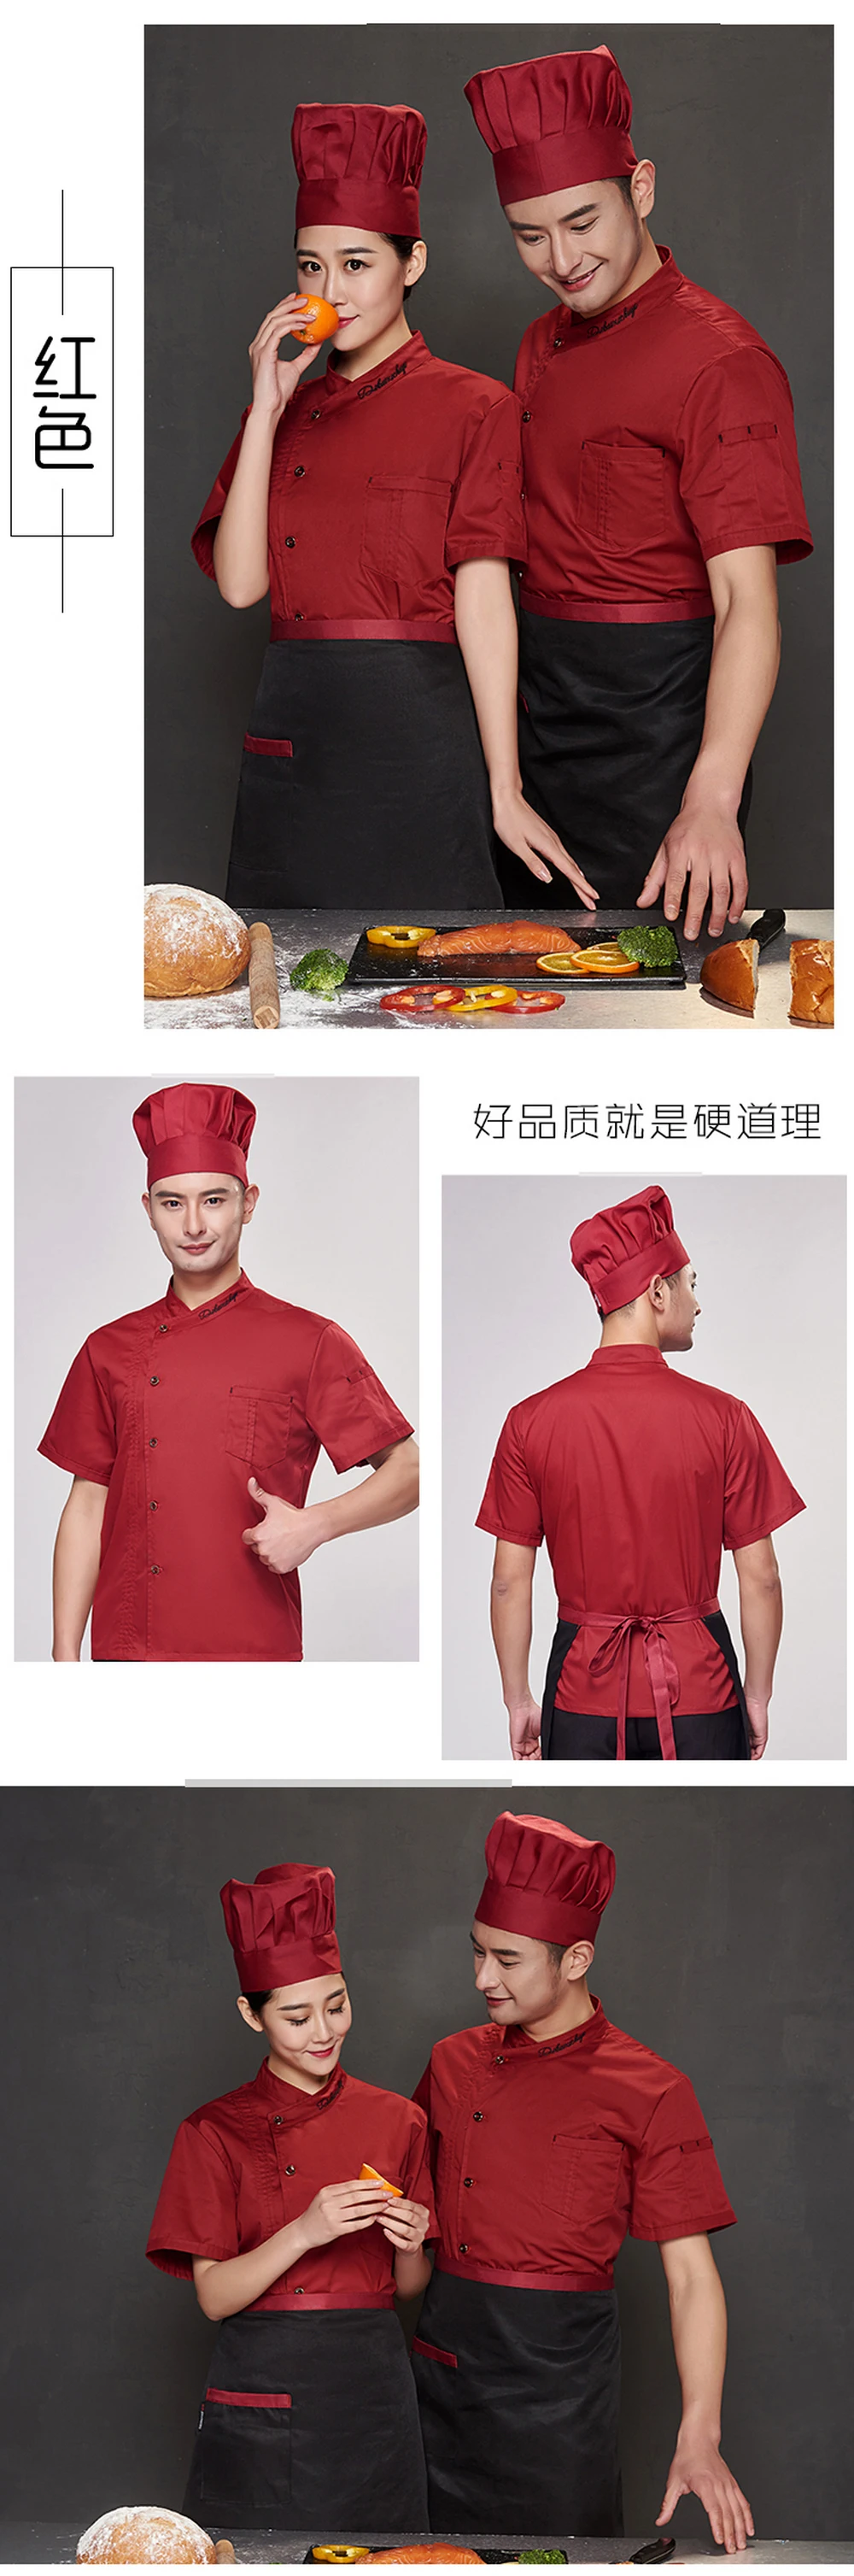 Viaoli куртка шеф-повара гостиницы, ресторана шеф-повара форма короткий рукав с дышащей сеткой спецодежды Ресторан общественного питания Кухня хлебобулочные рубашка